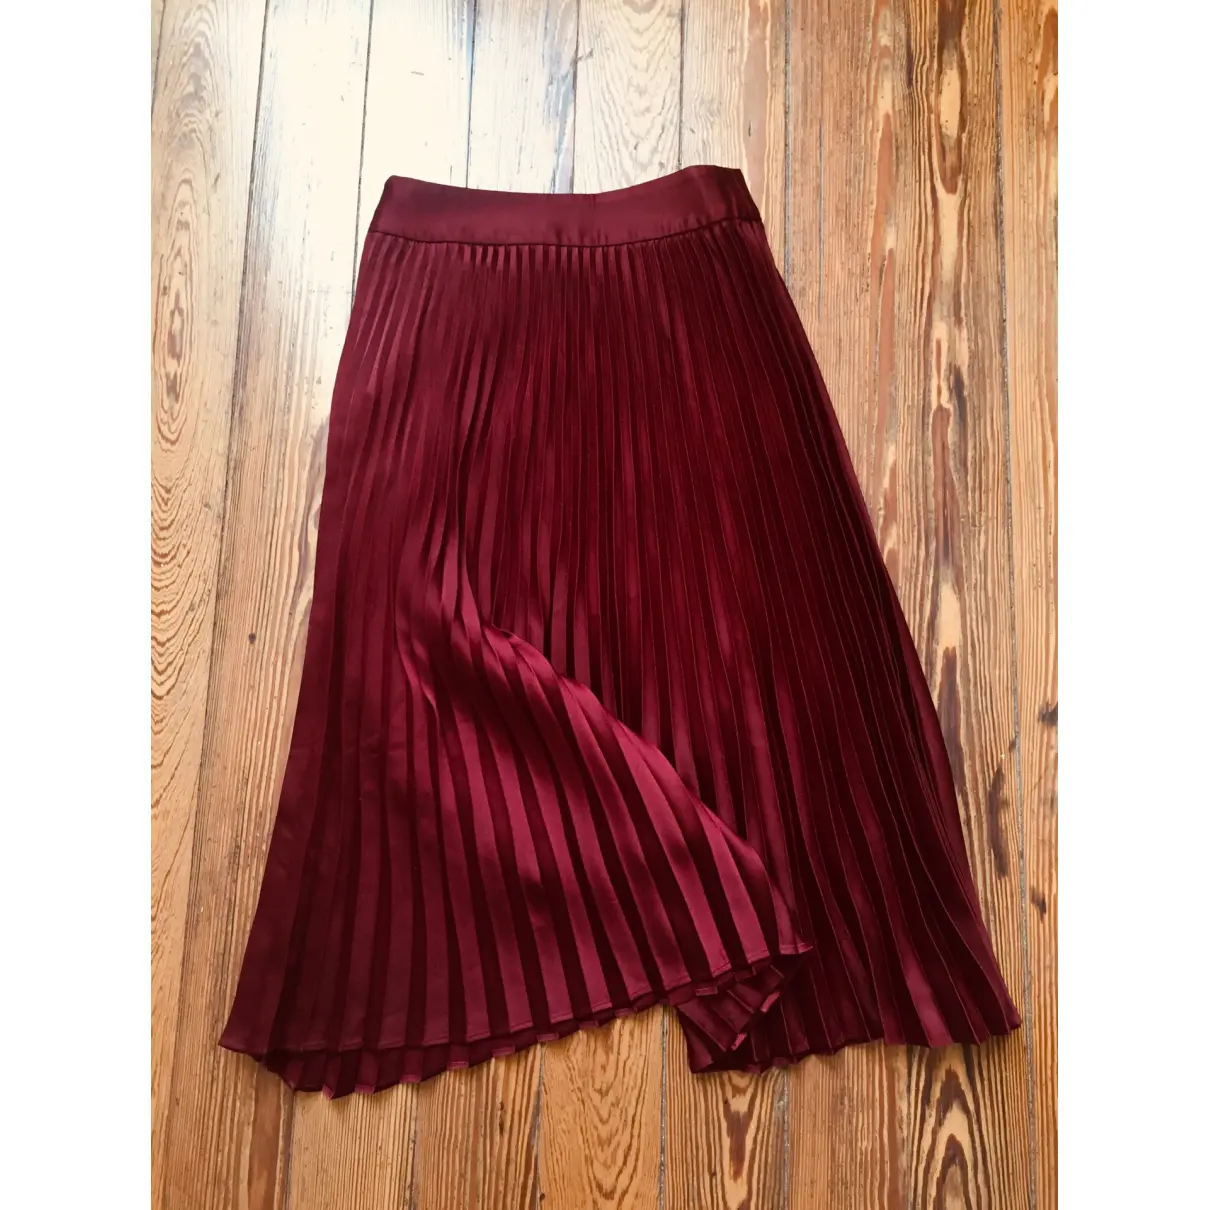 Buy Sézane Mid-length skirt online